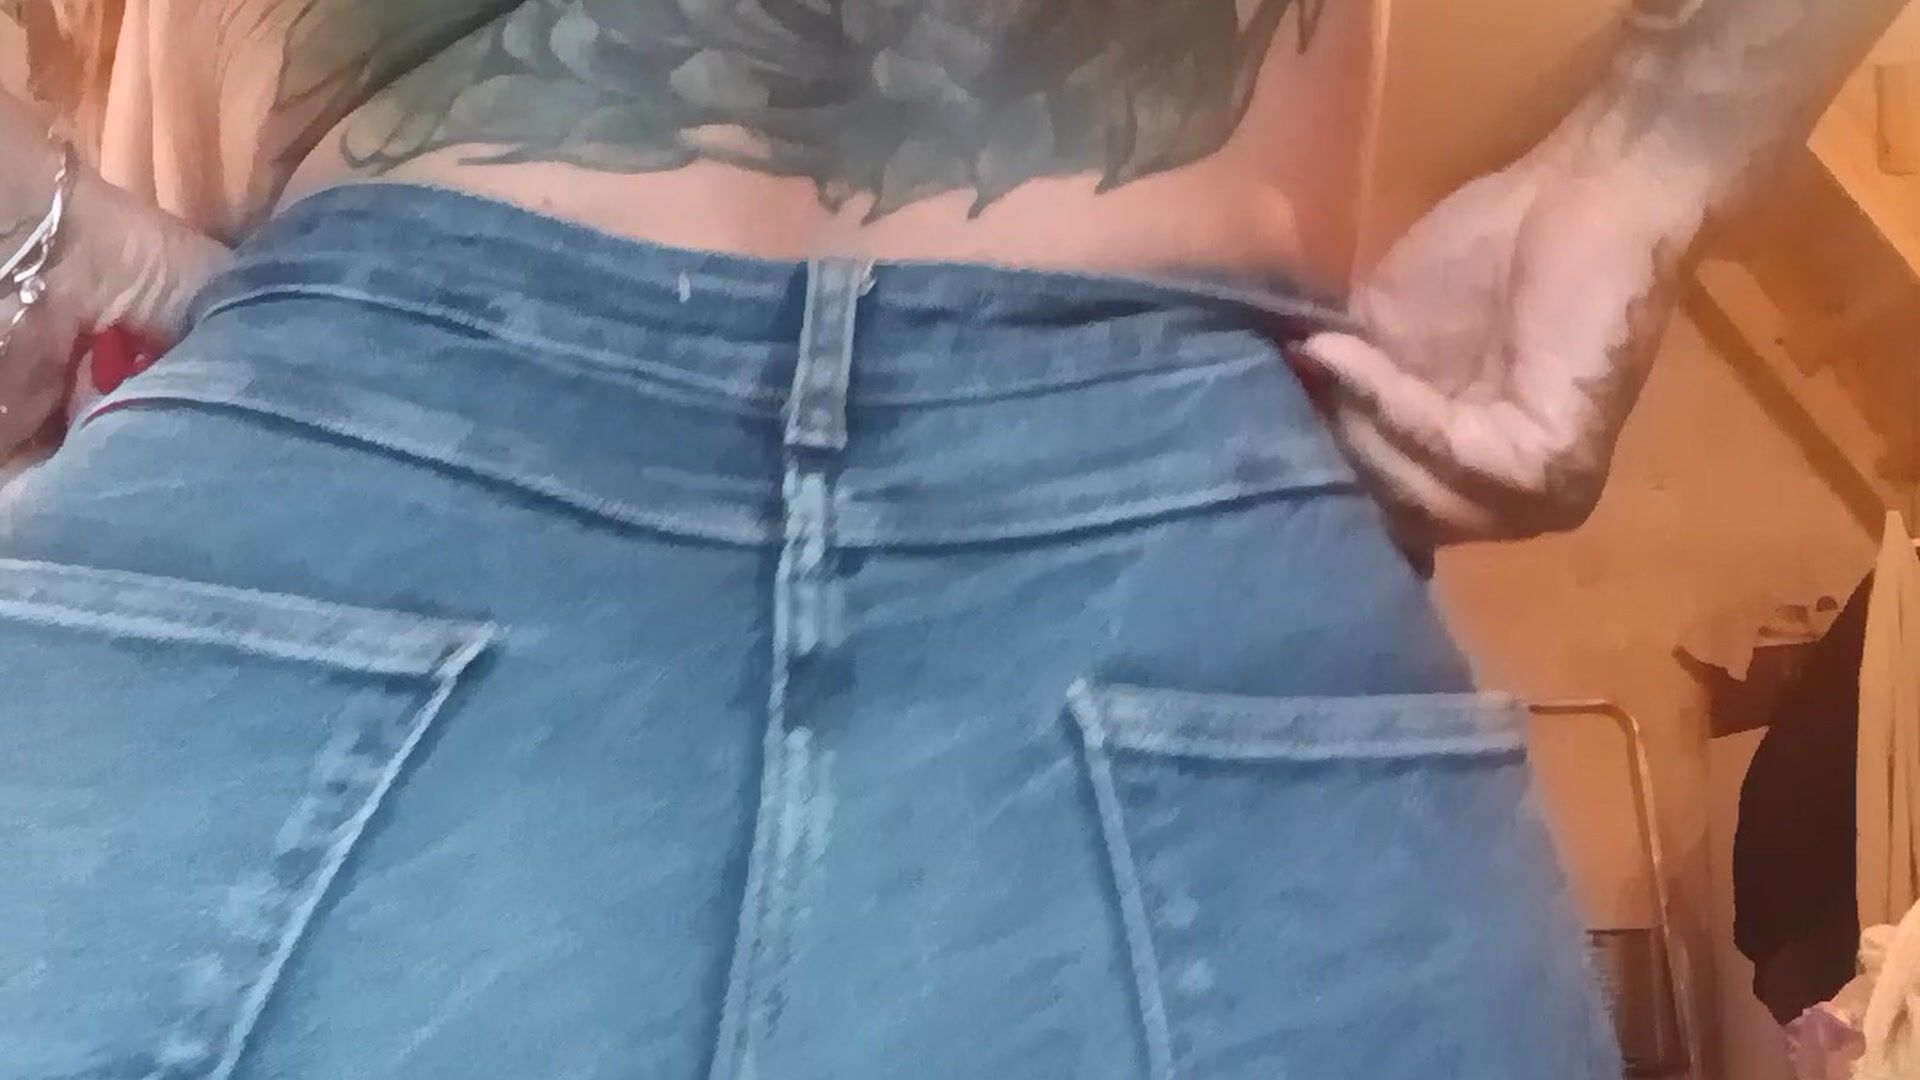 Ass with jeans if u like...